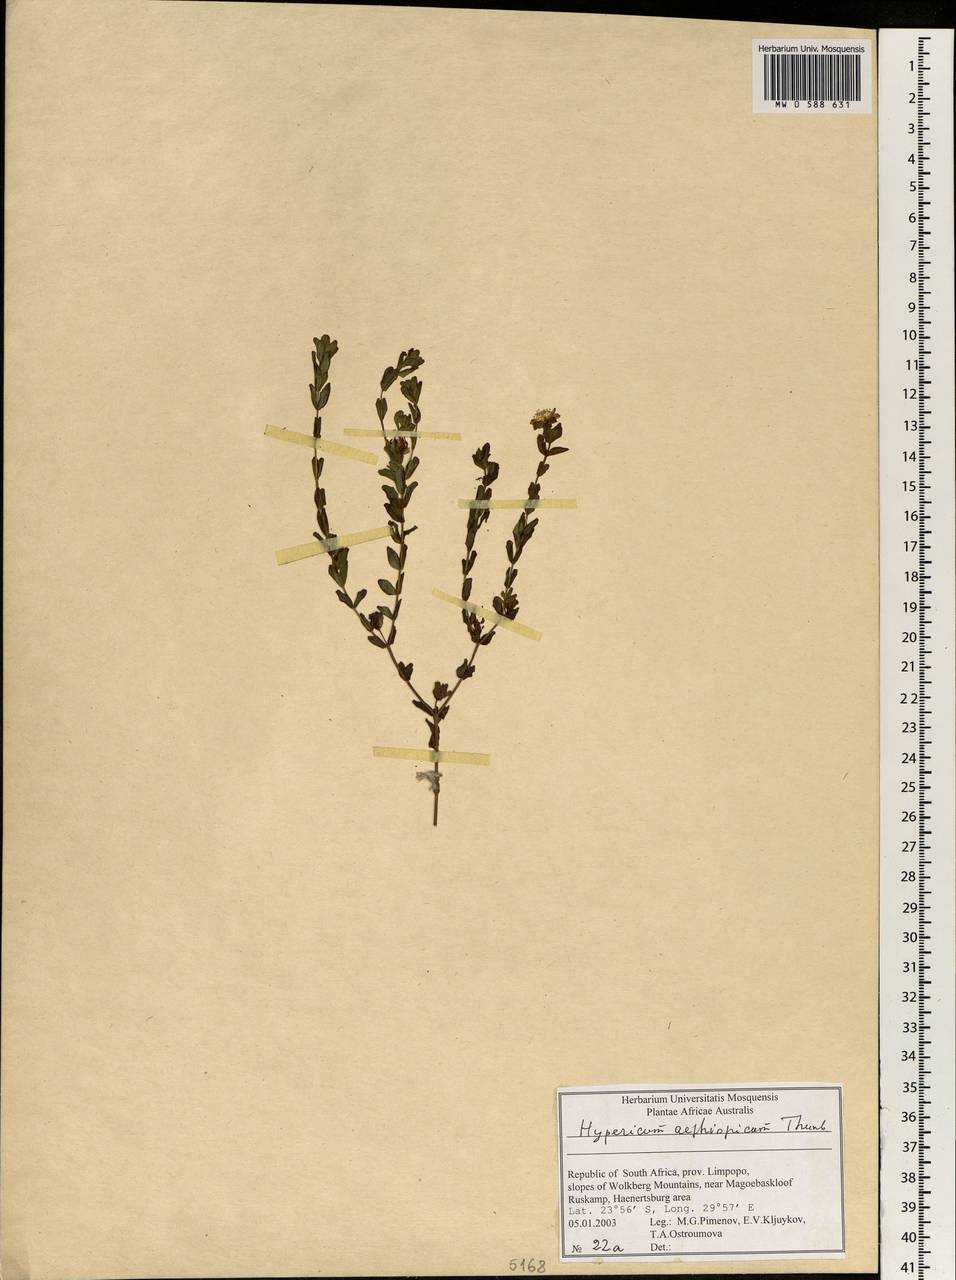 Hypericum aethiopicum, Africa (AFR) (South Africa)